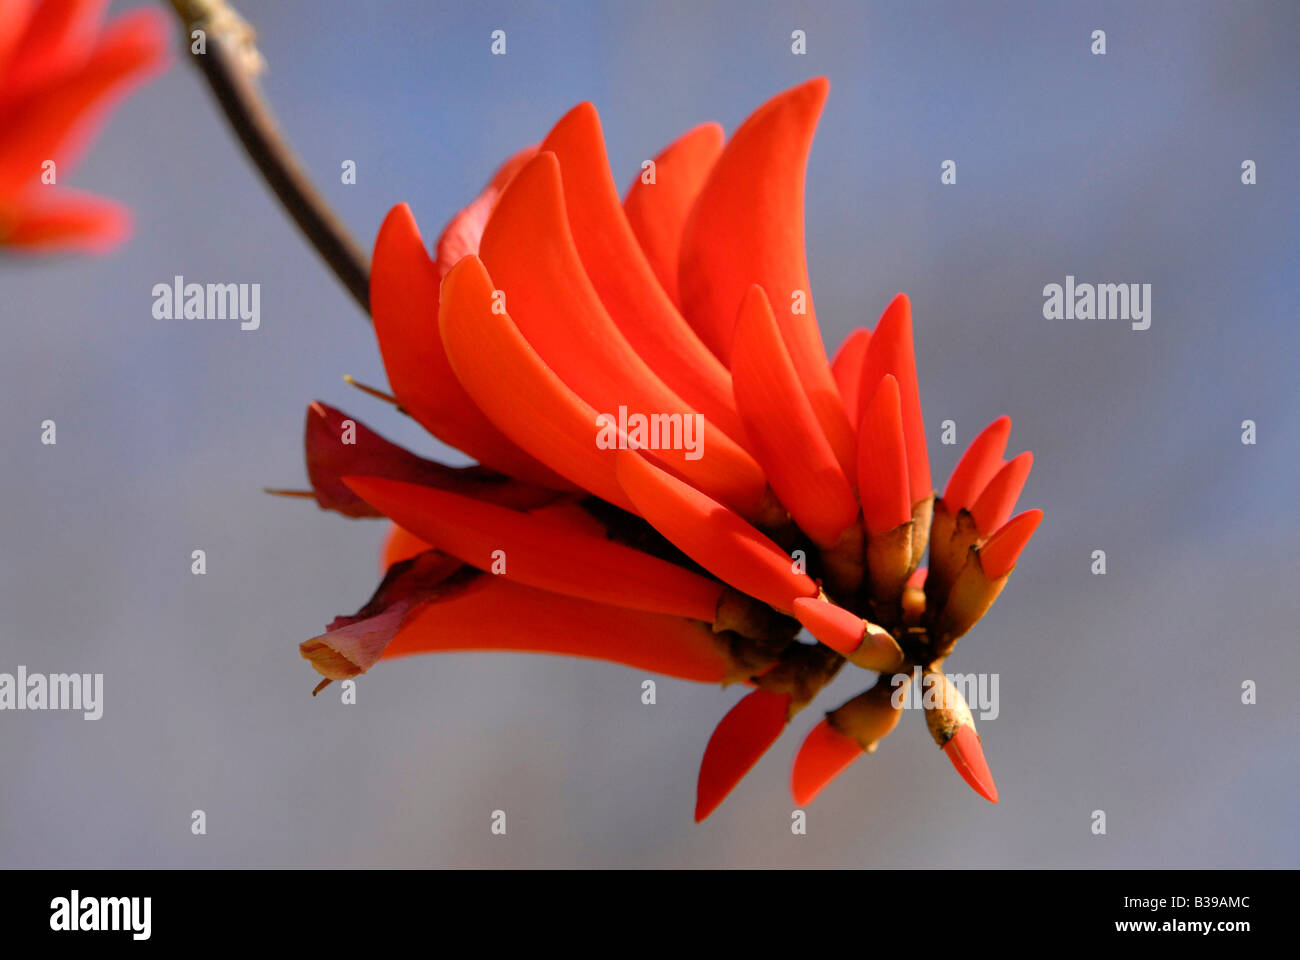 Fleur rouge de la Coral Tree, une partie de la famille Erithryna, parfois appelé le 'Lucky' haricot. Pousse bien en Afrique australe Banque D'Images